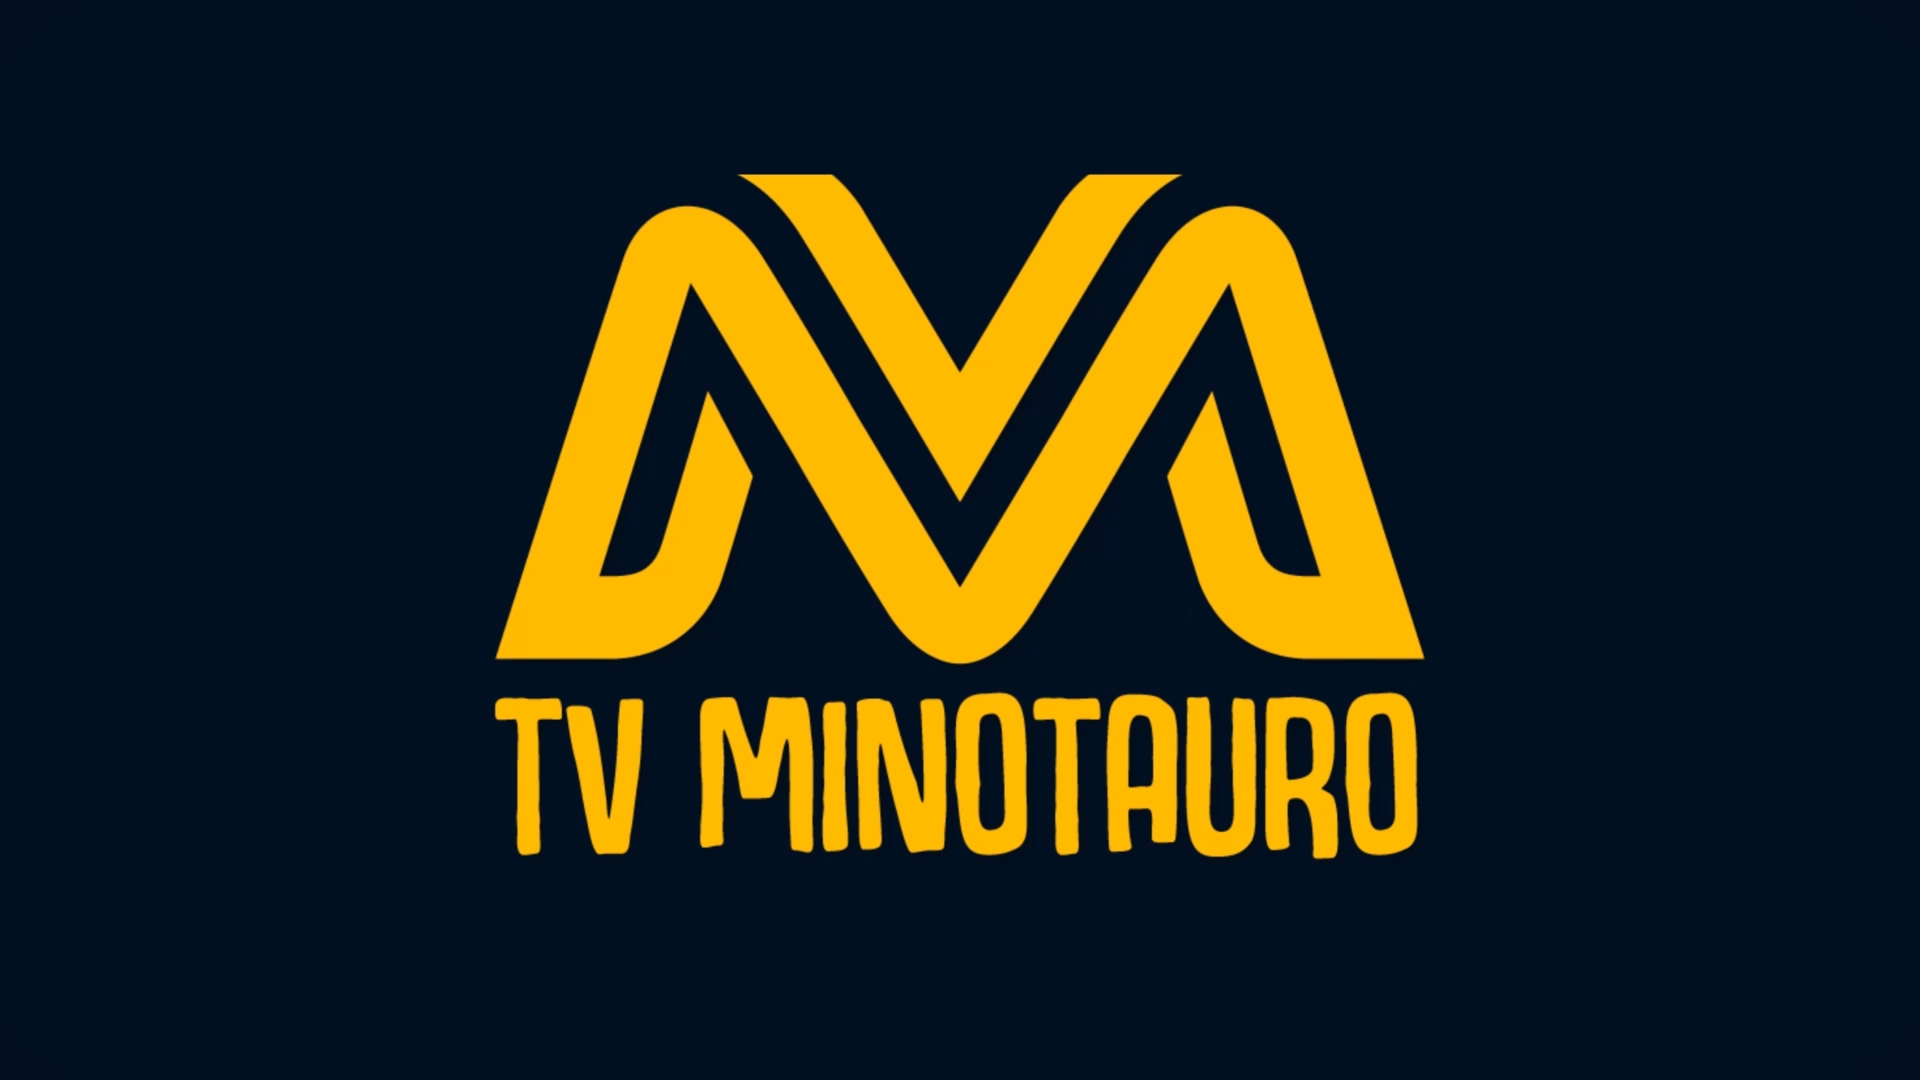 TV MINOTAURO capa2